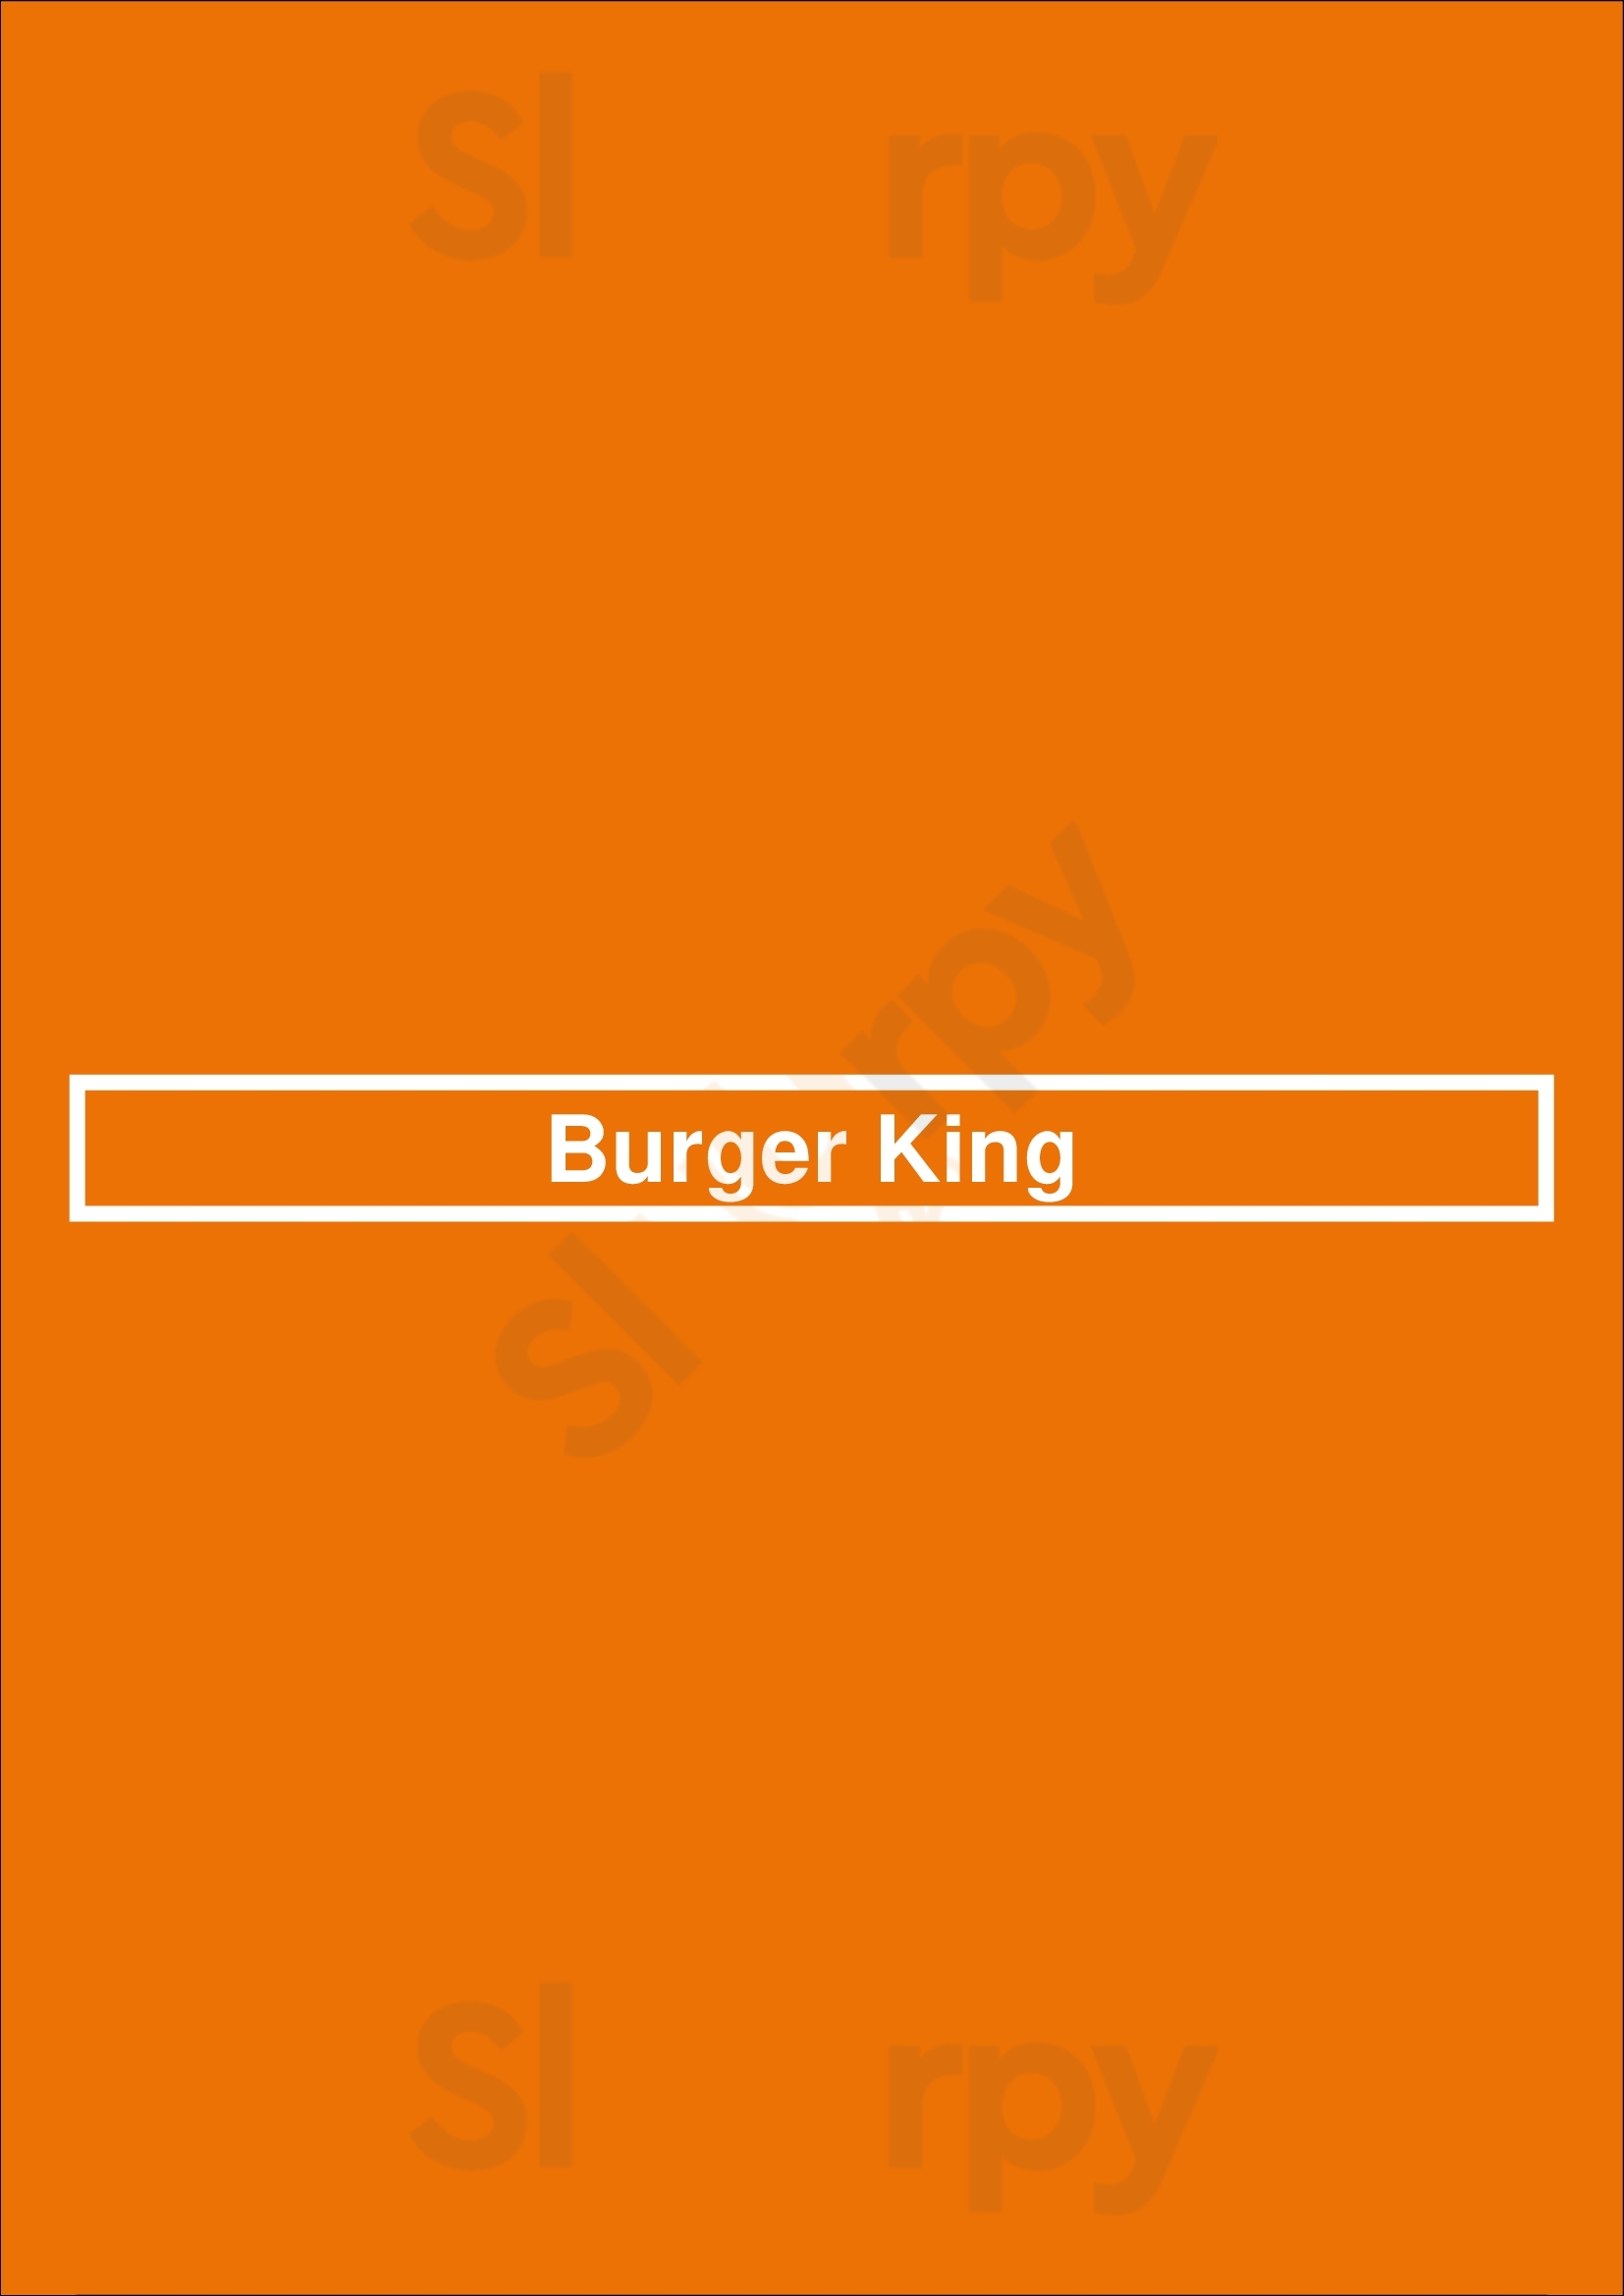 Burger King Tracy Menu - 1